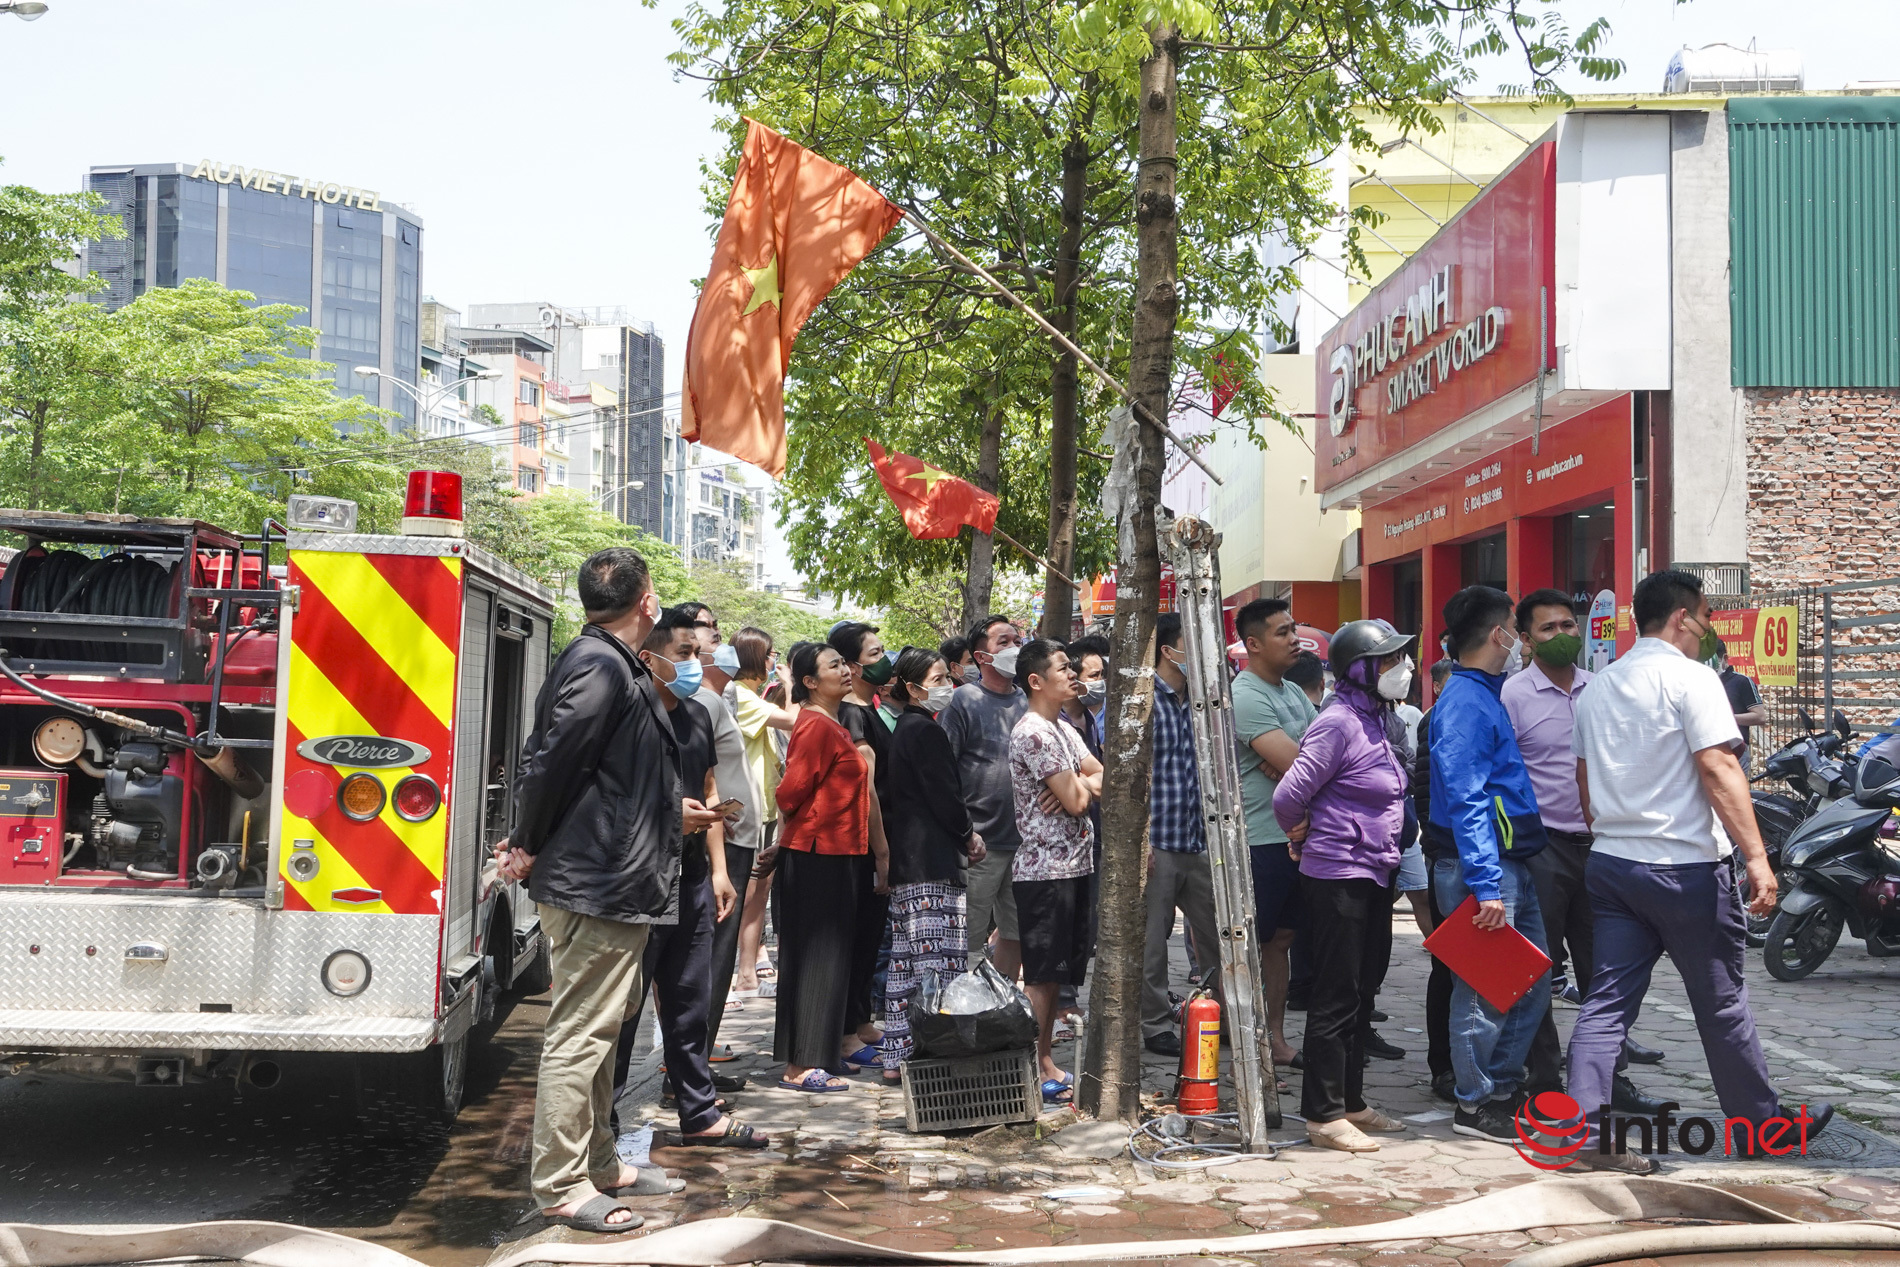 Hà Nội: Cháy quán bún chả lan sang cửa hàng massage, khách hàng bỏ chạy tán loạn